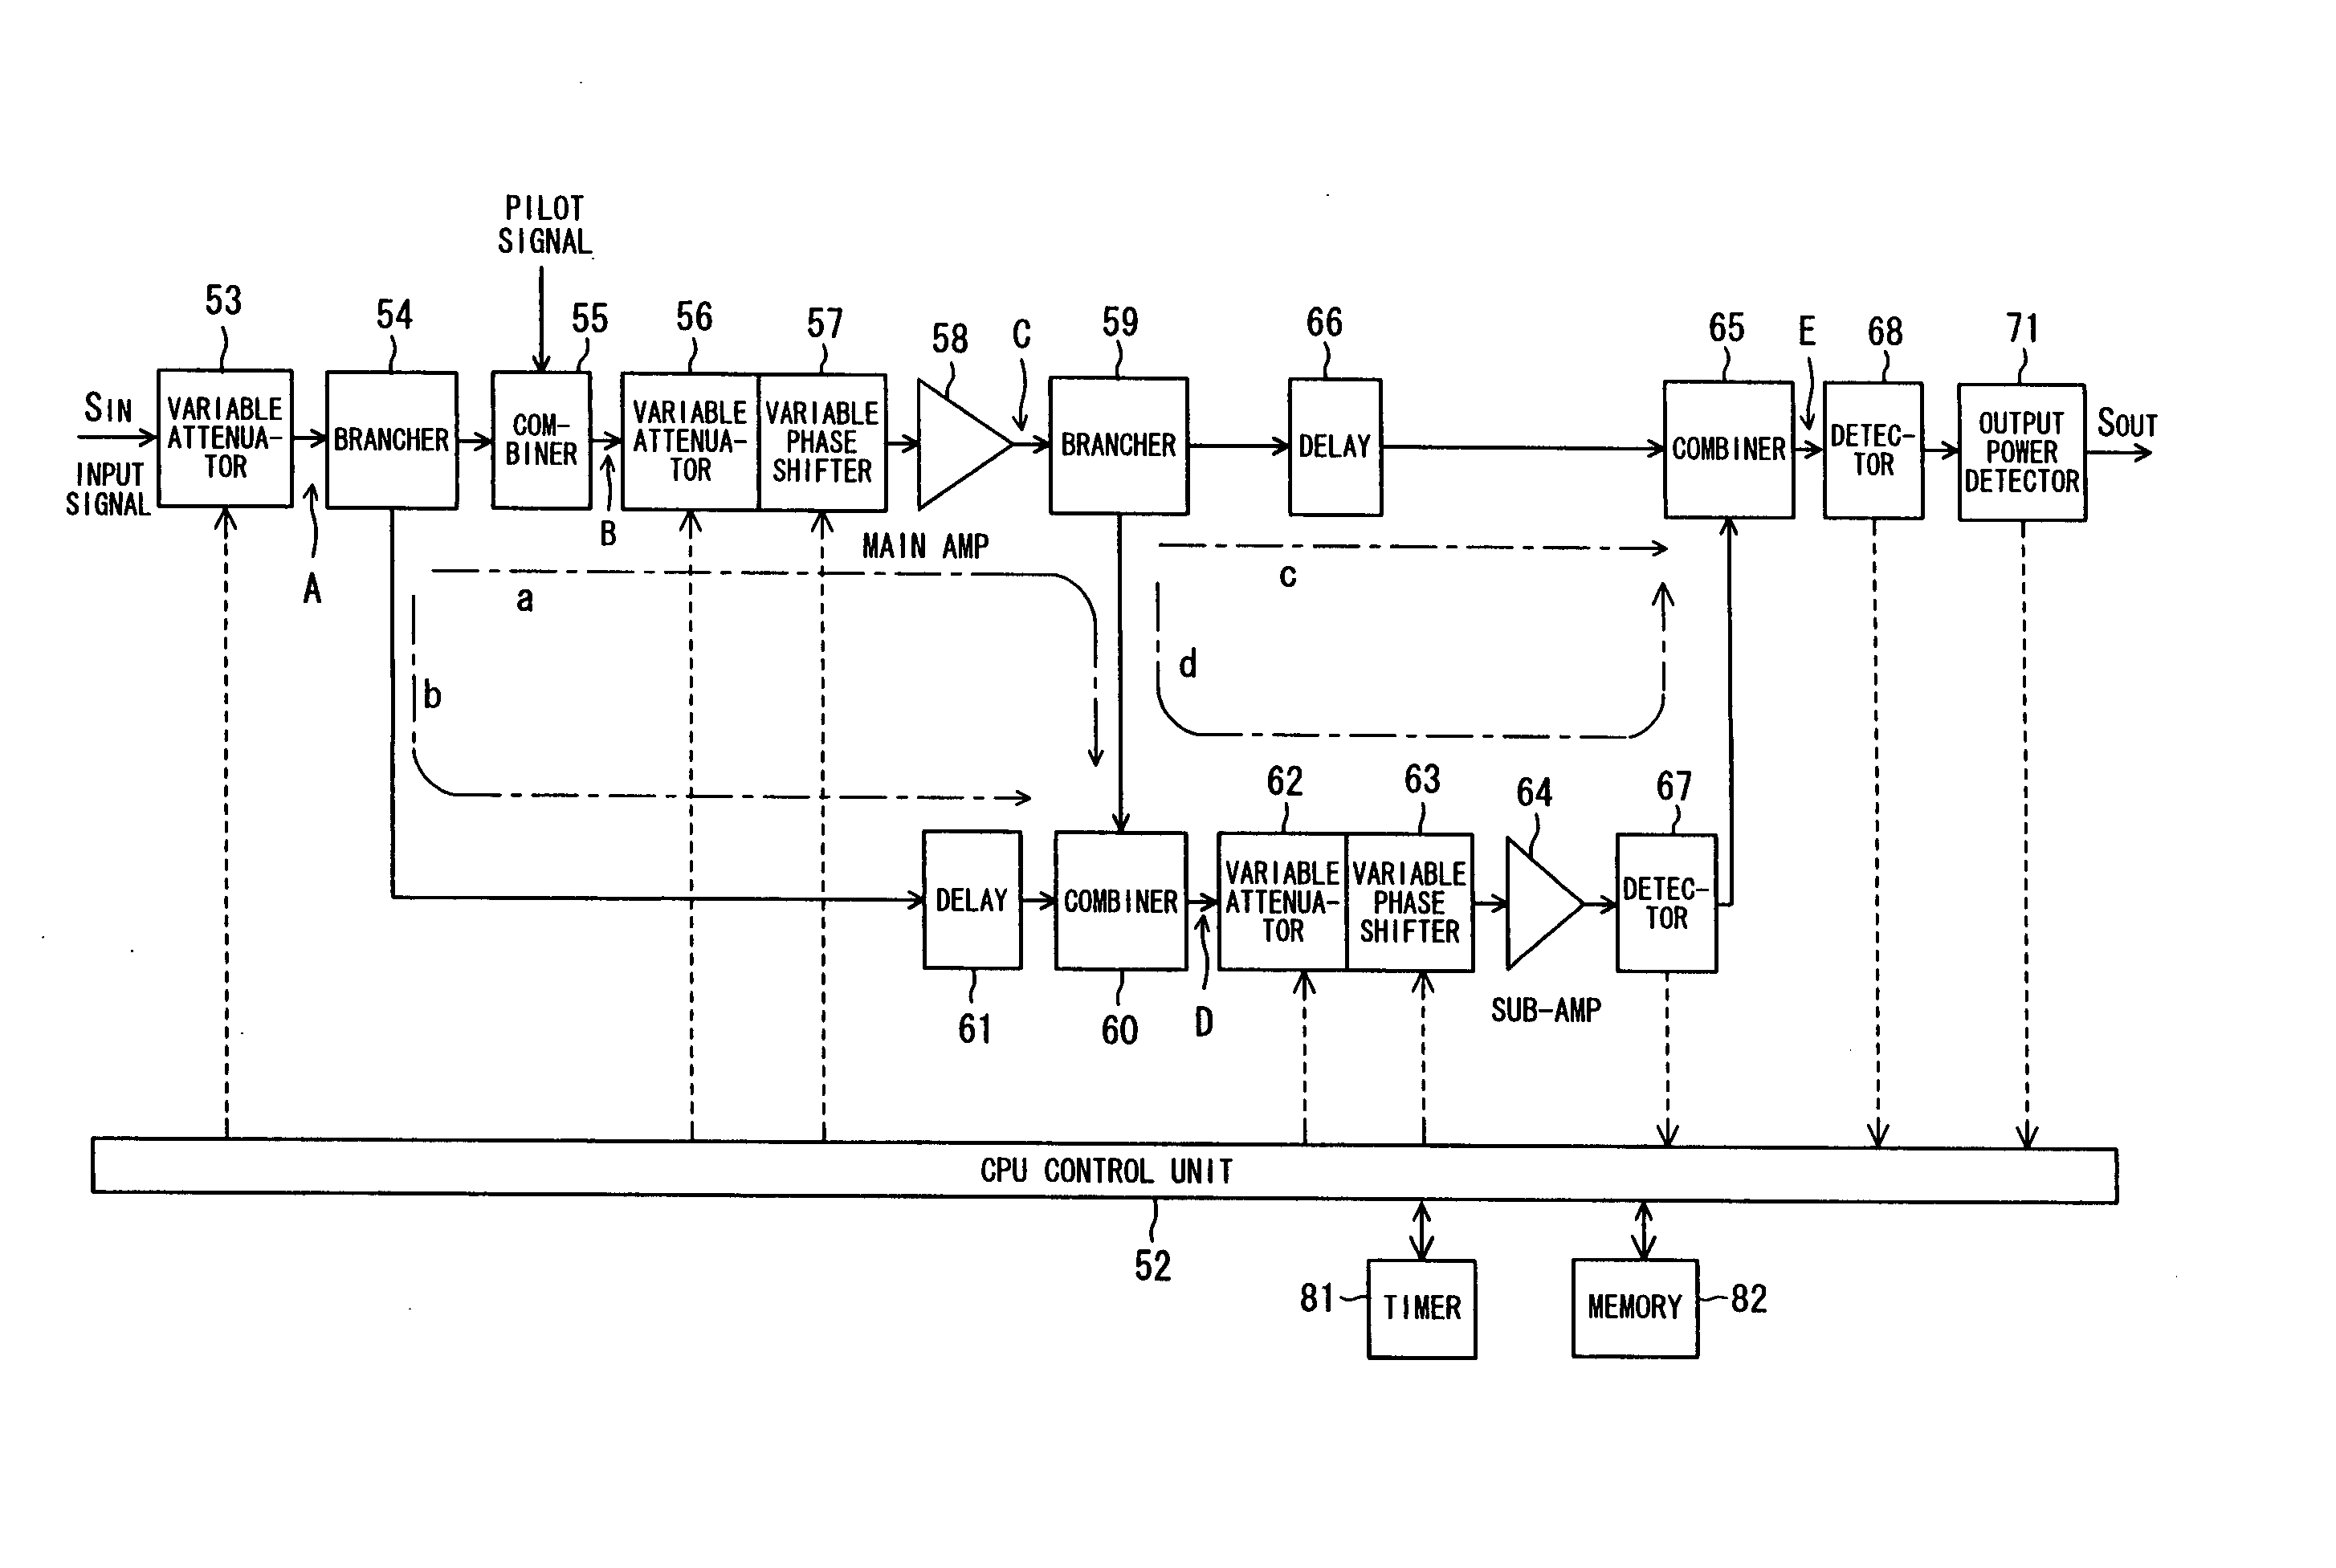 Transmission power amplifier unit